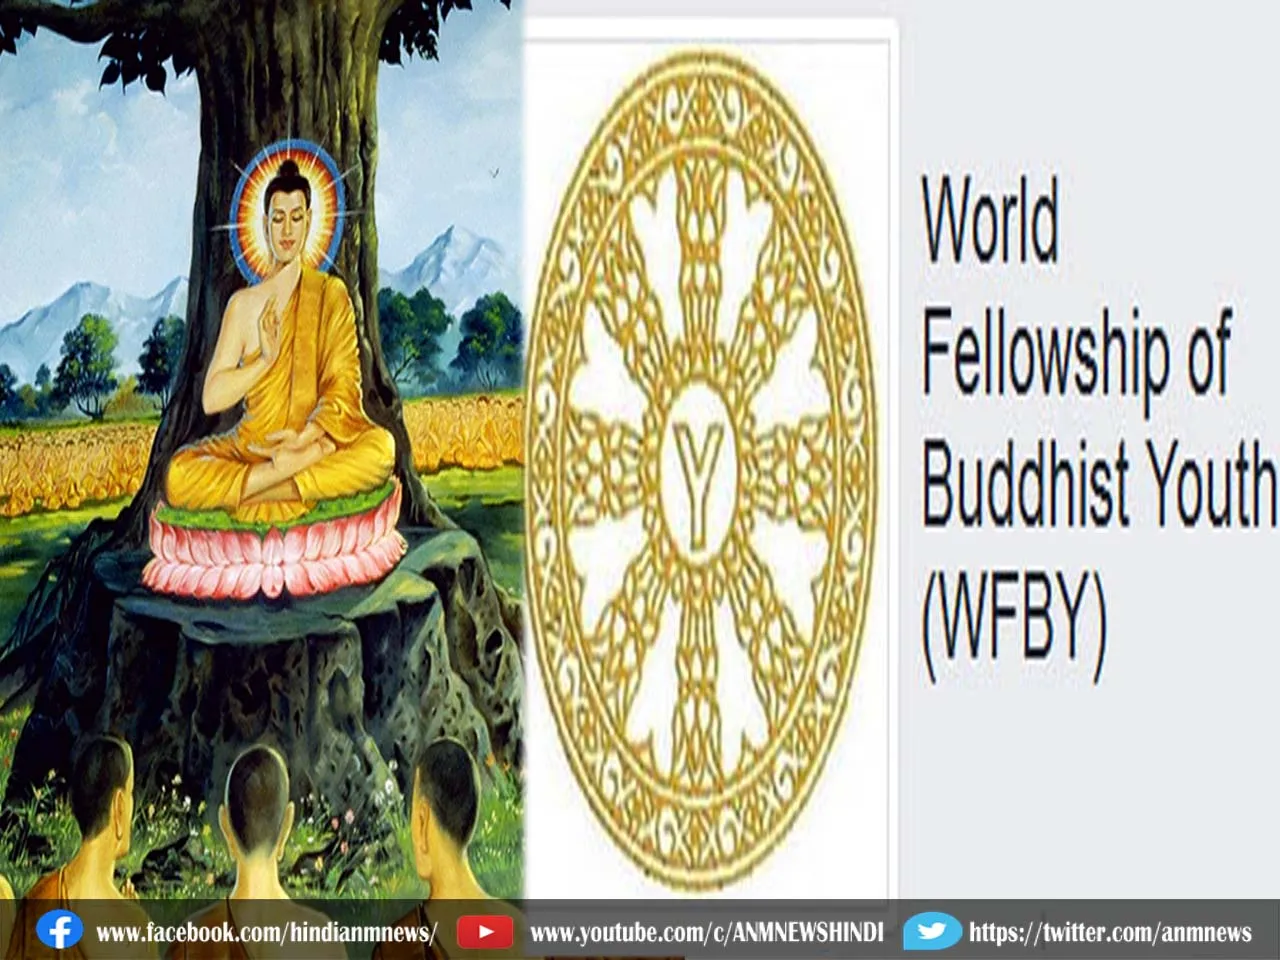 जानिए कब और कहां शुरू हुआ था बौद्धों की पहला विश्व फैलोशिप सम्मेलन